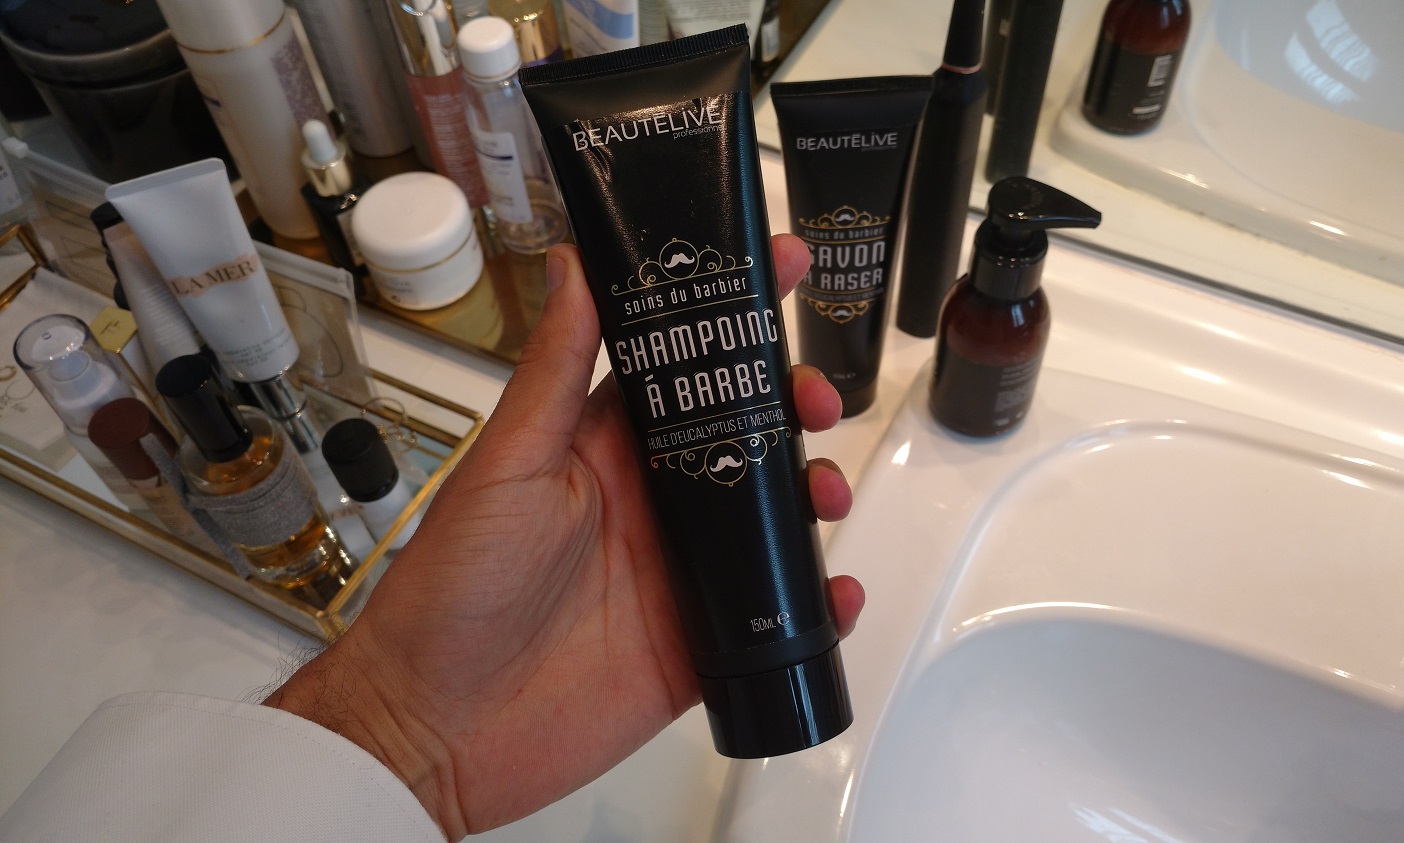 shampoing pour la barbe Beautélive